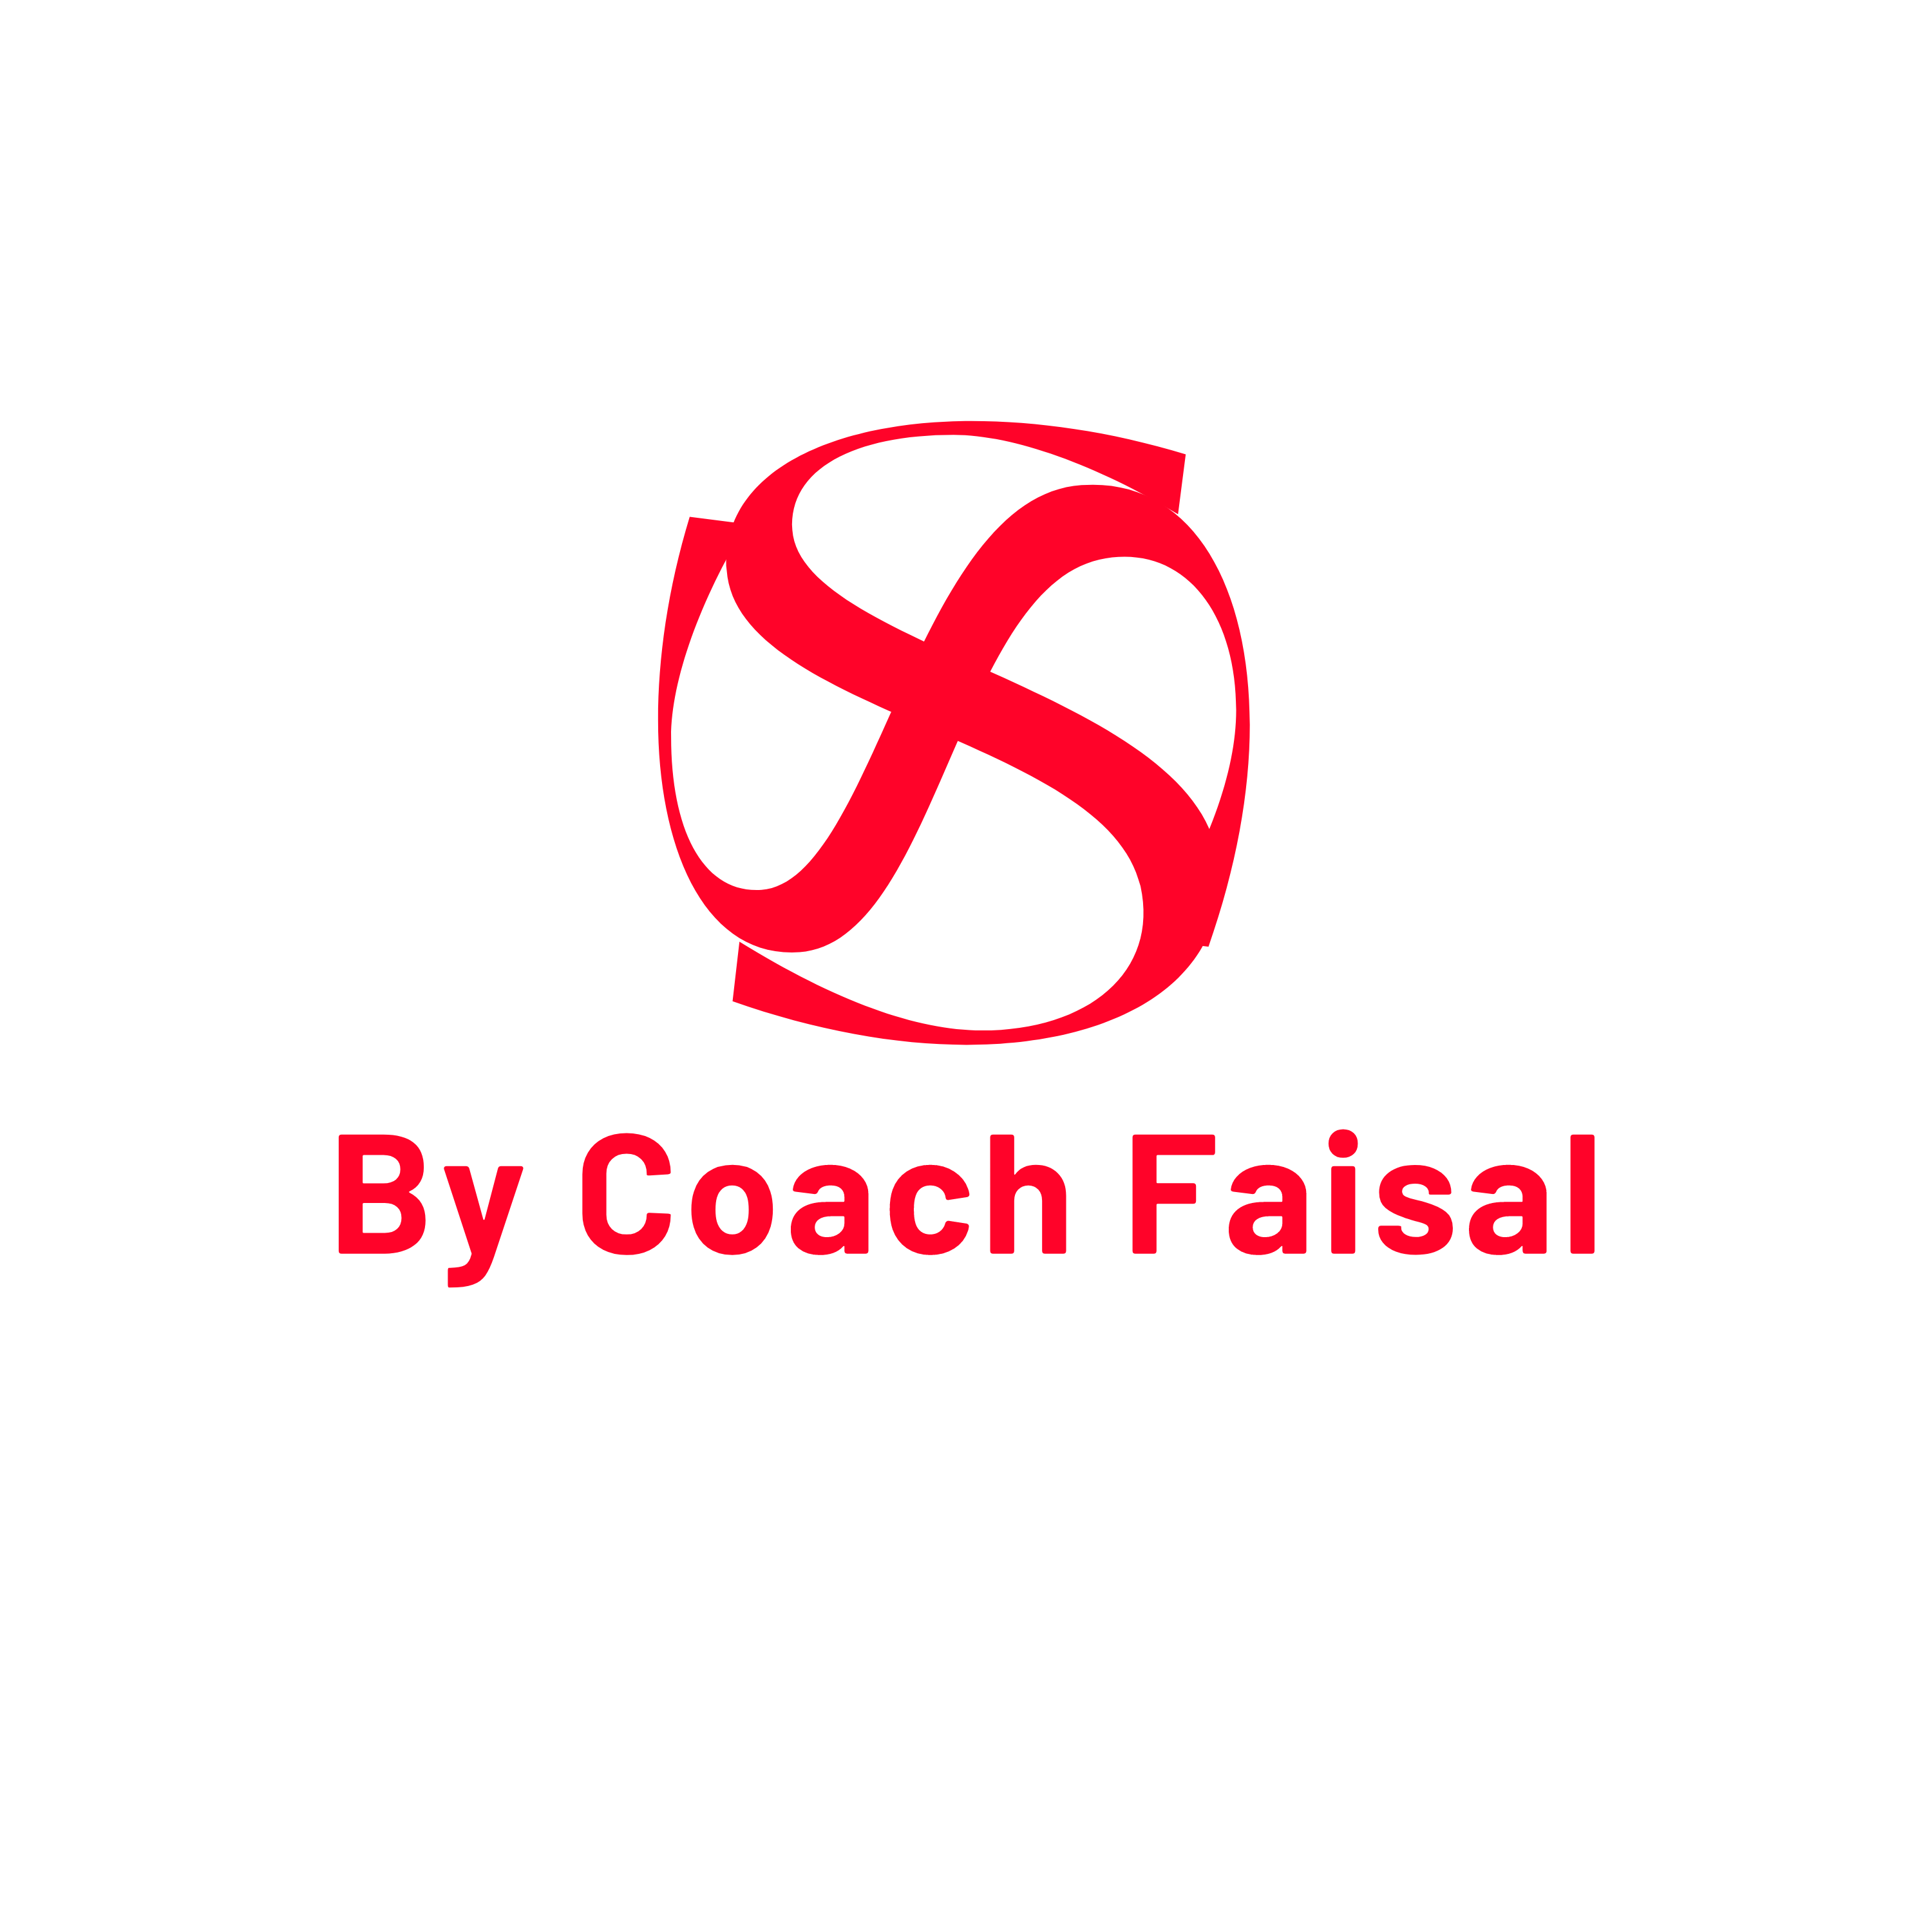 By Coach faisal